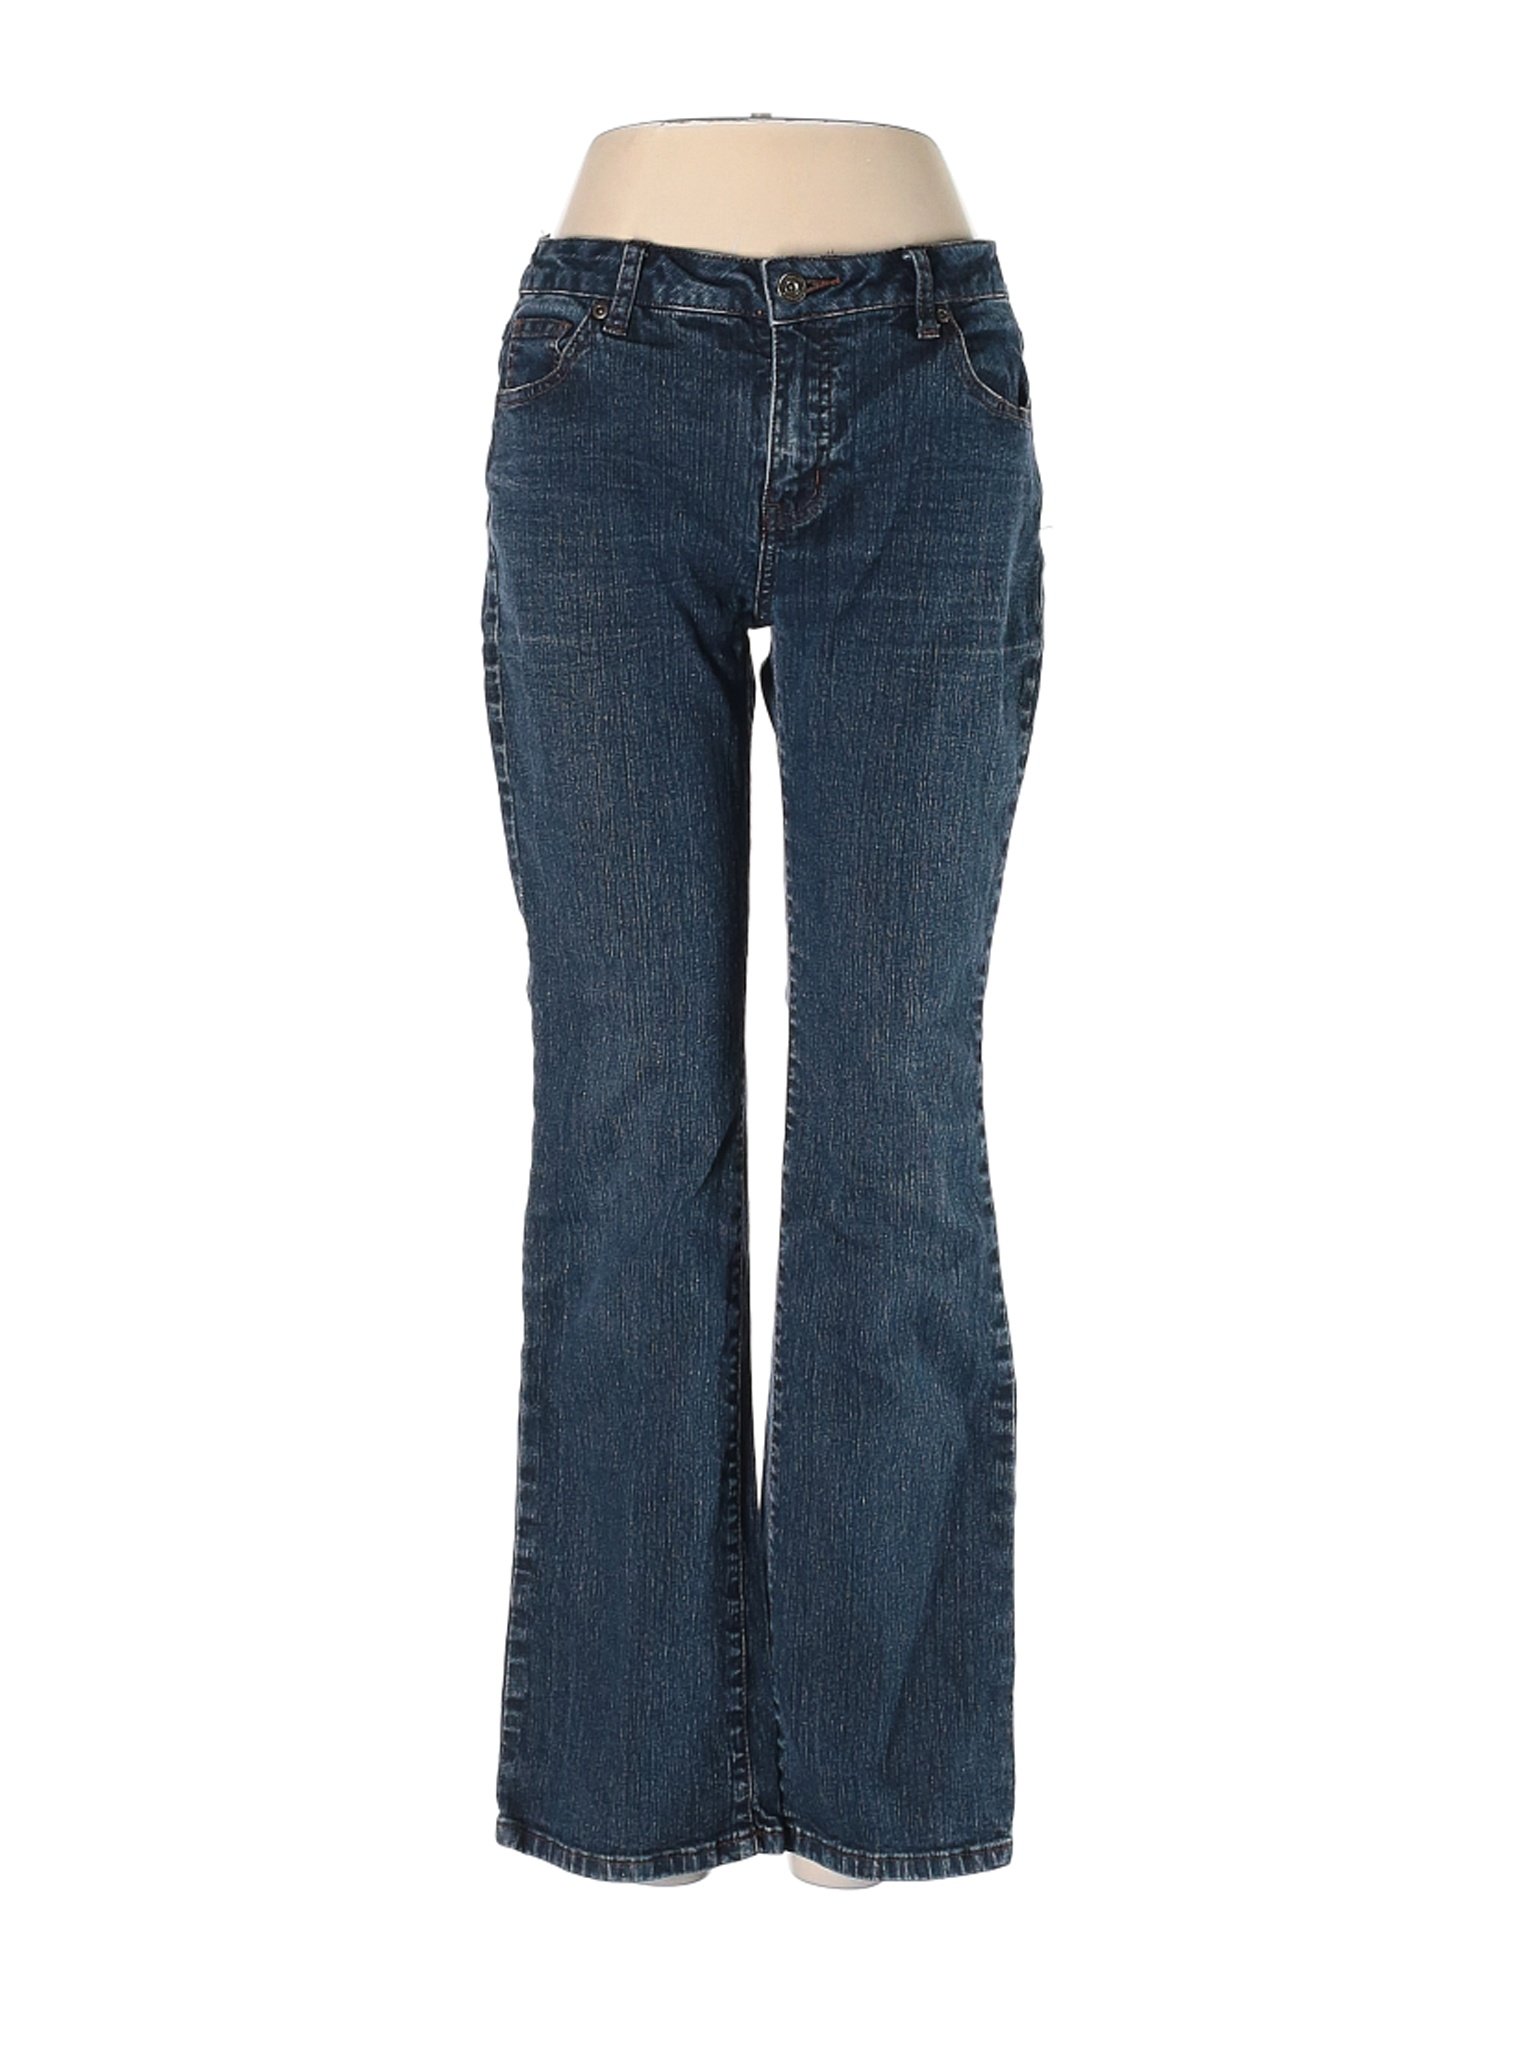 Westport Women Blue Jeans 4 Petites | eBay